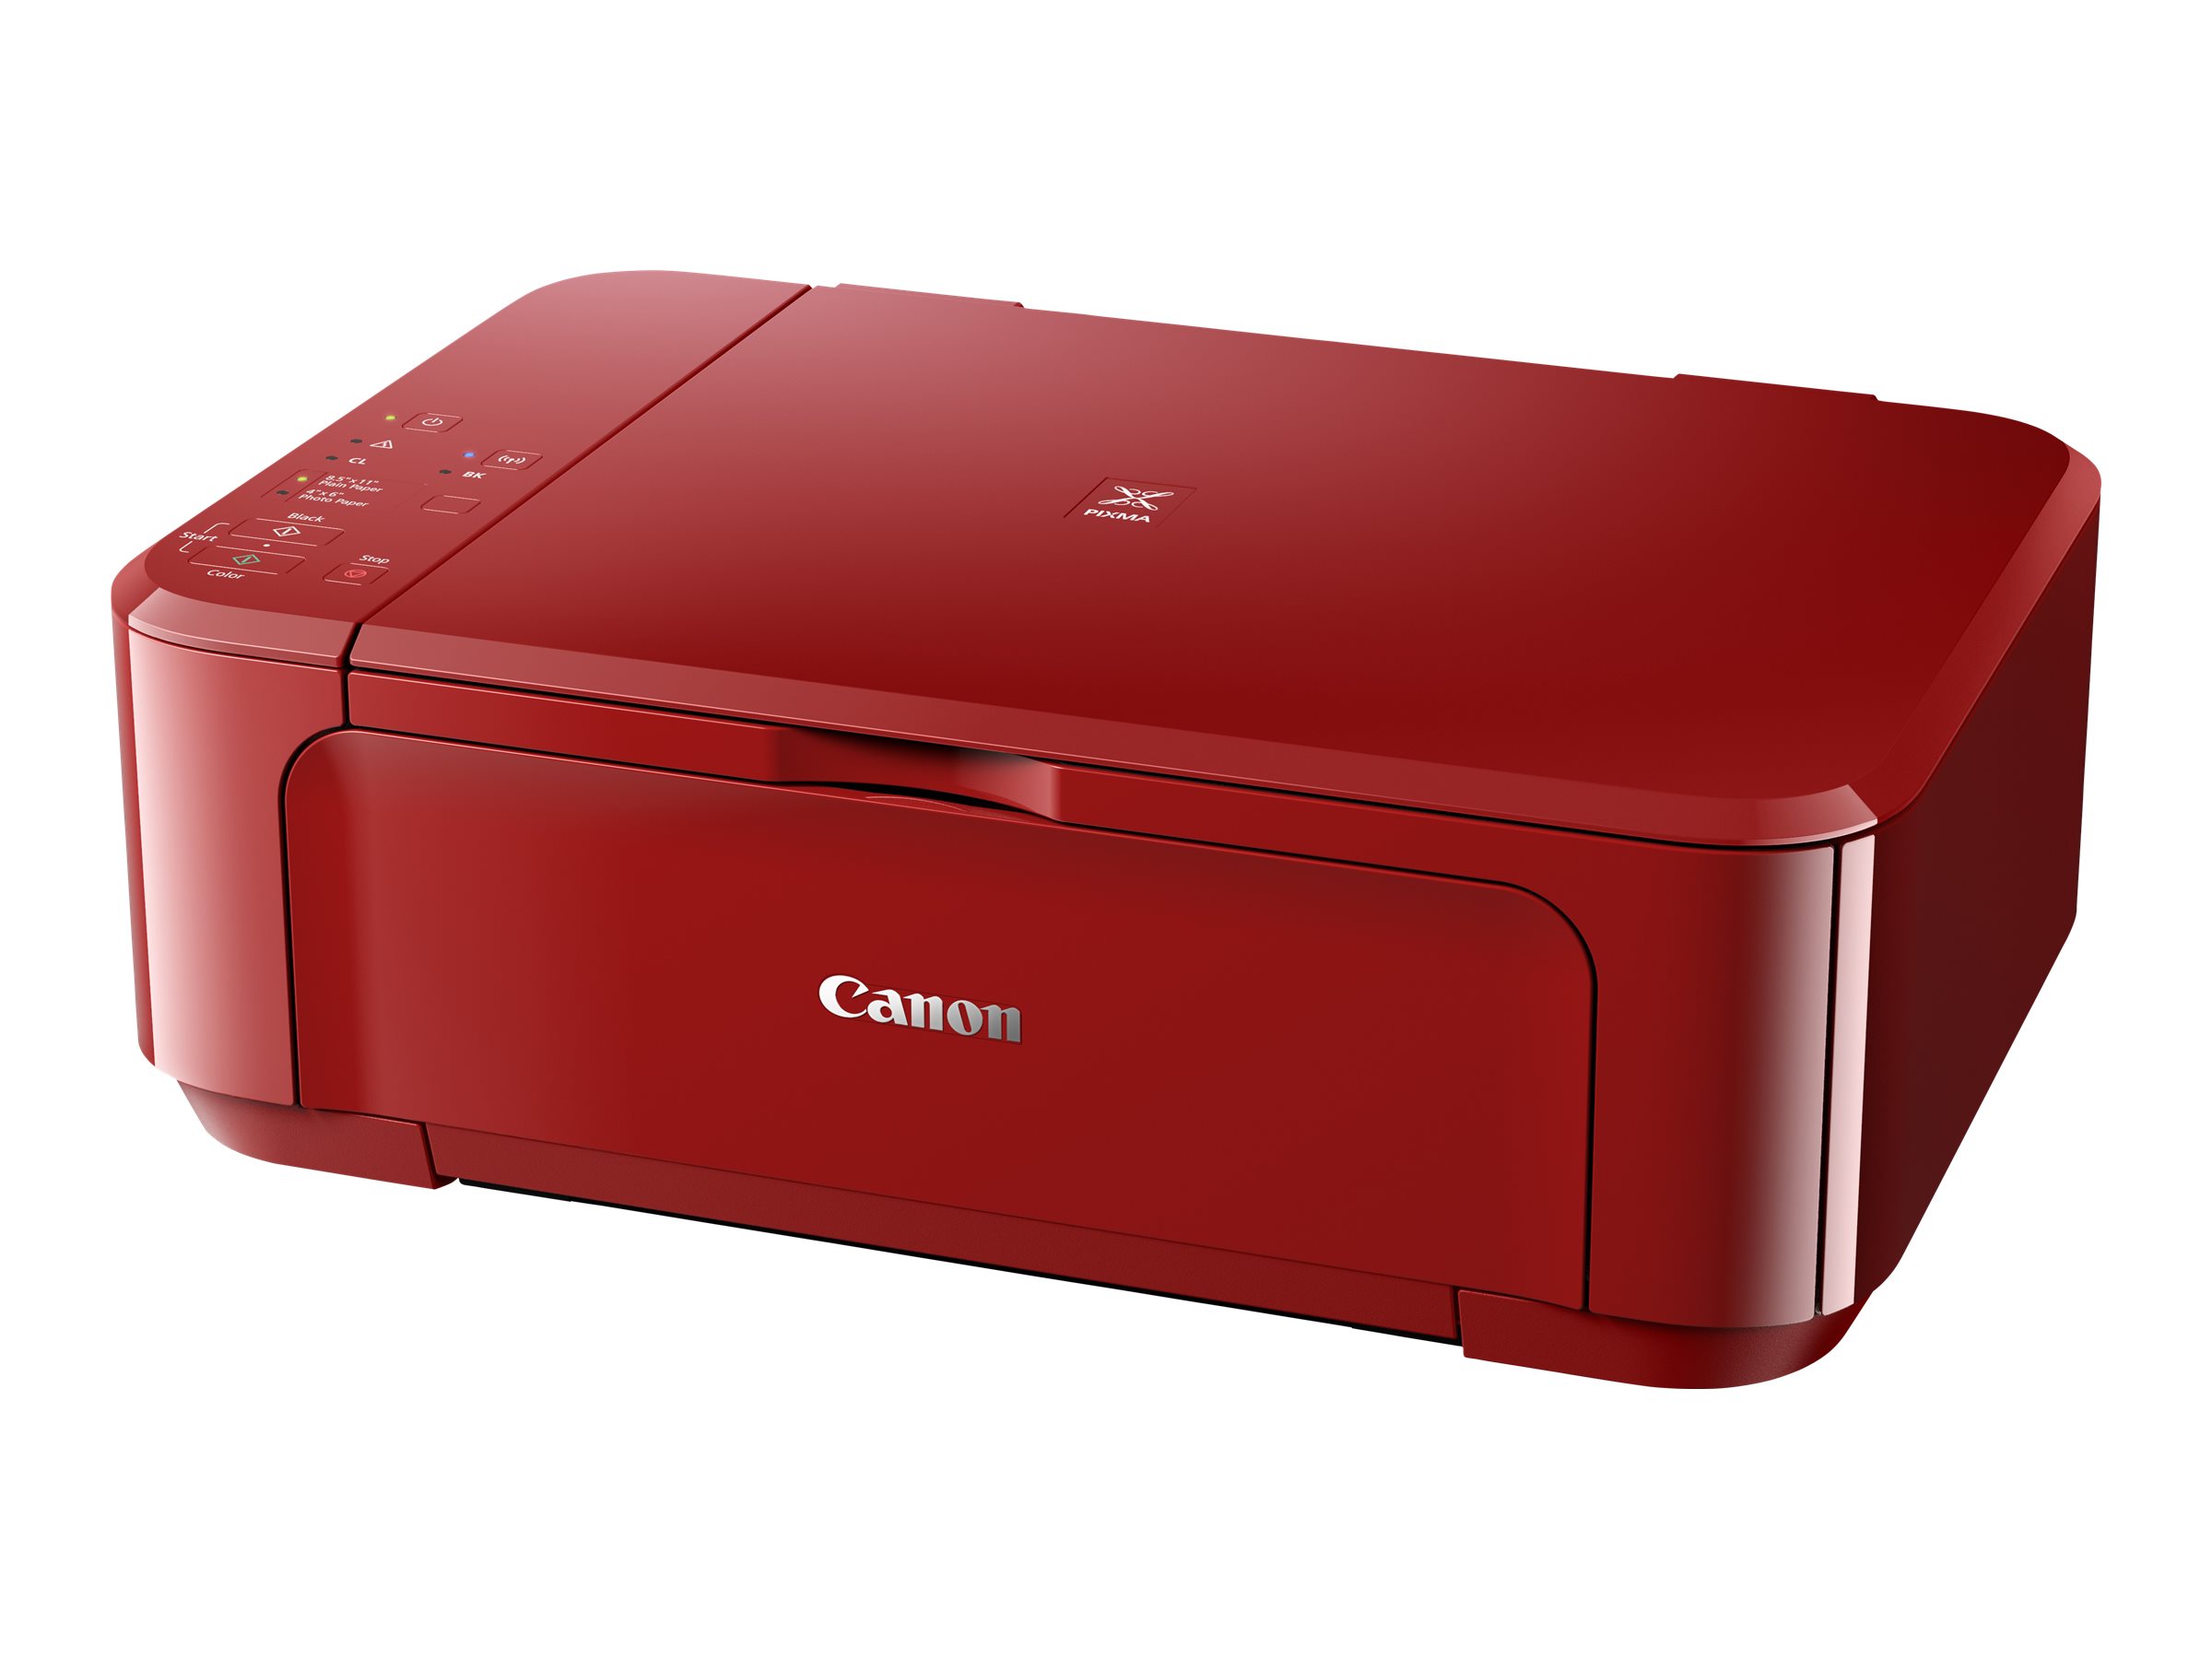 Принтер Canon mg3540. Canon PIXMA mg3540 Red. Canon PIXMA mg3540 МФУ принтер. Canon PIXMA mg3550. Canon pixma mg3640s картридж